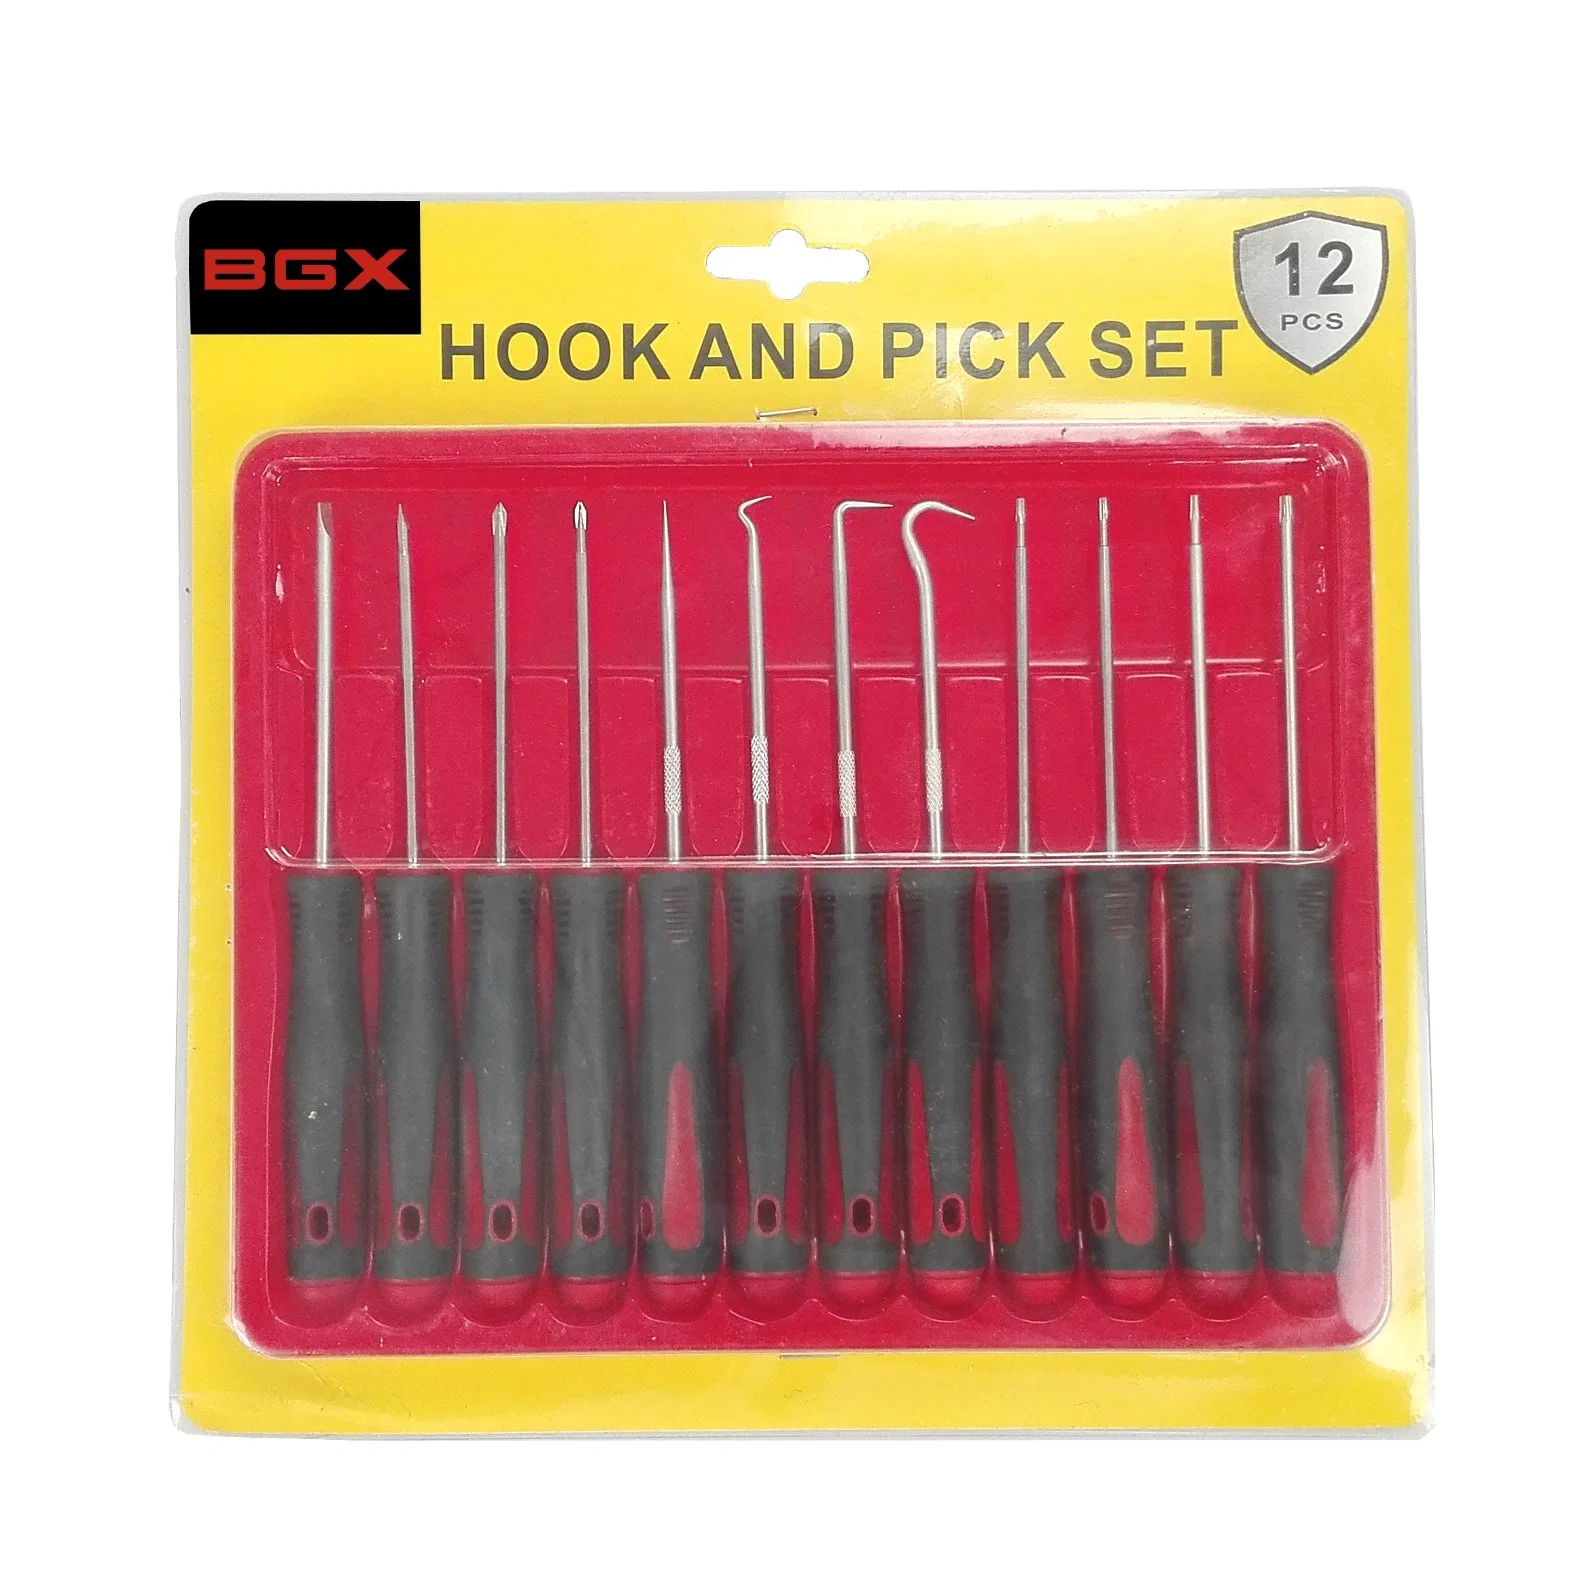 BGX Professional 12 pcs Hook and mini pick set tool kit